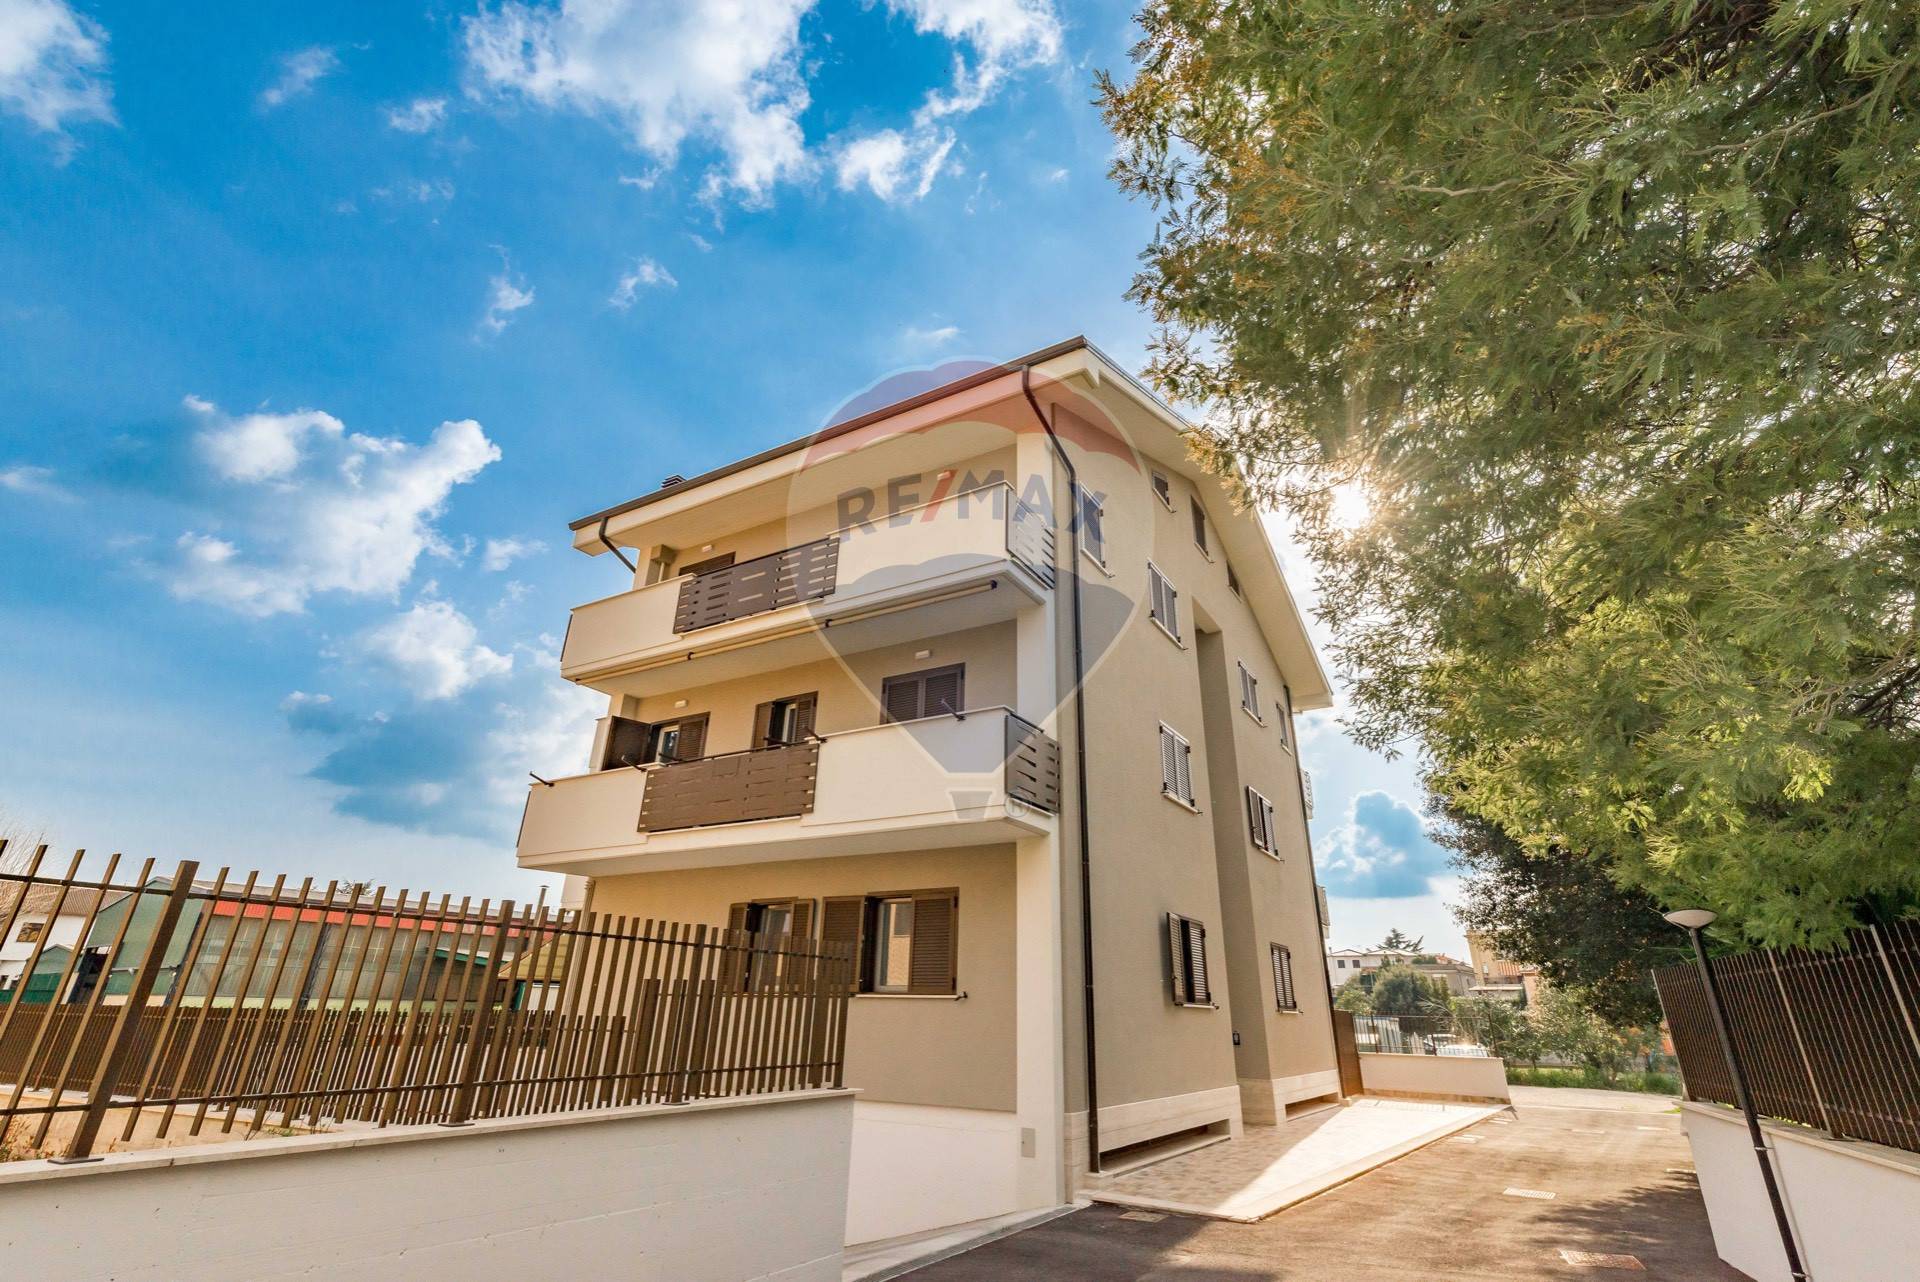 Appartamento in vendita a Guidonia Montecelio, 4 locali, prezzo € 215.000 | CambioCasa.it